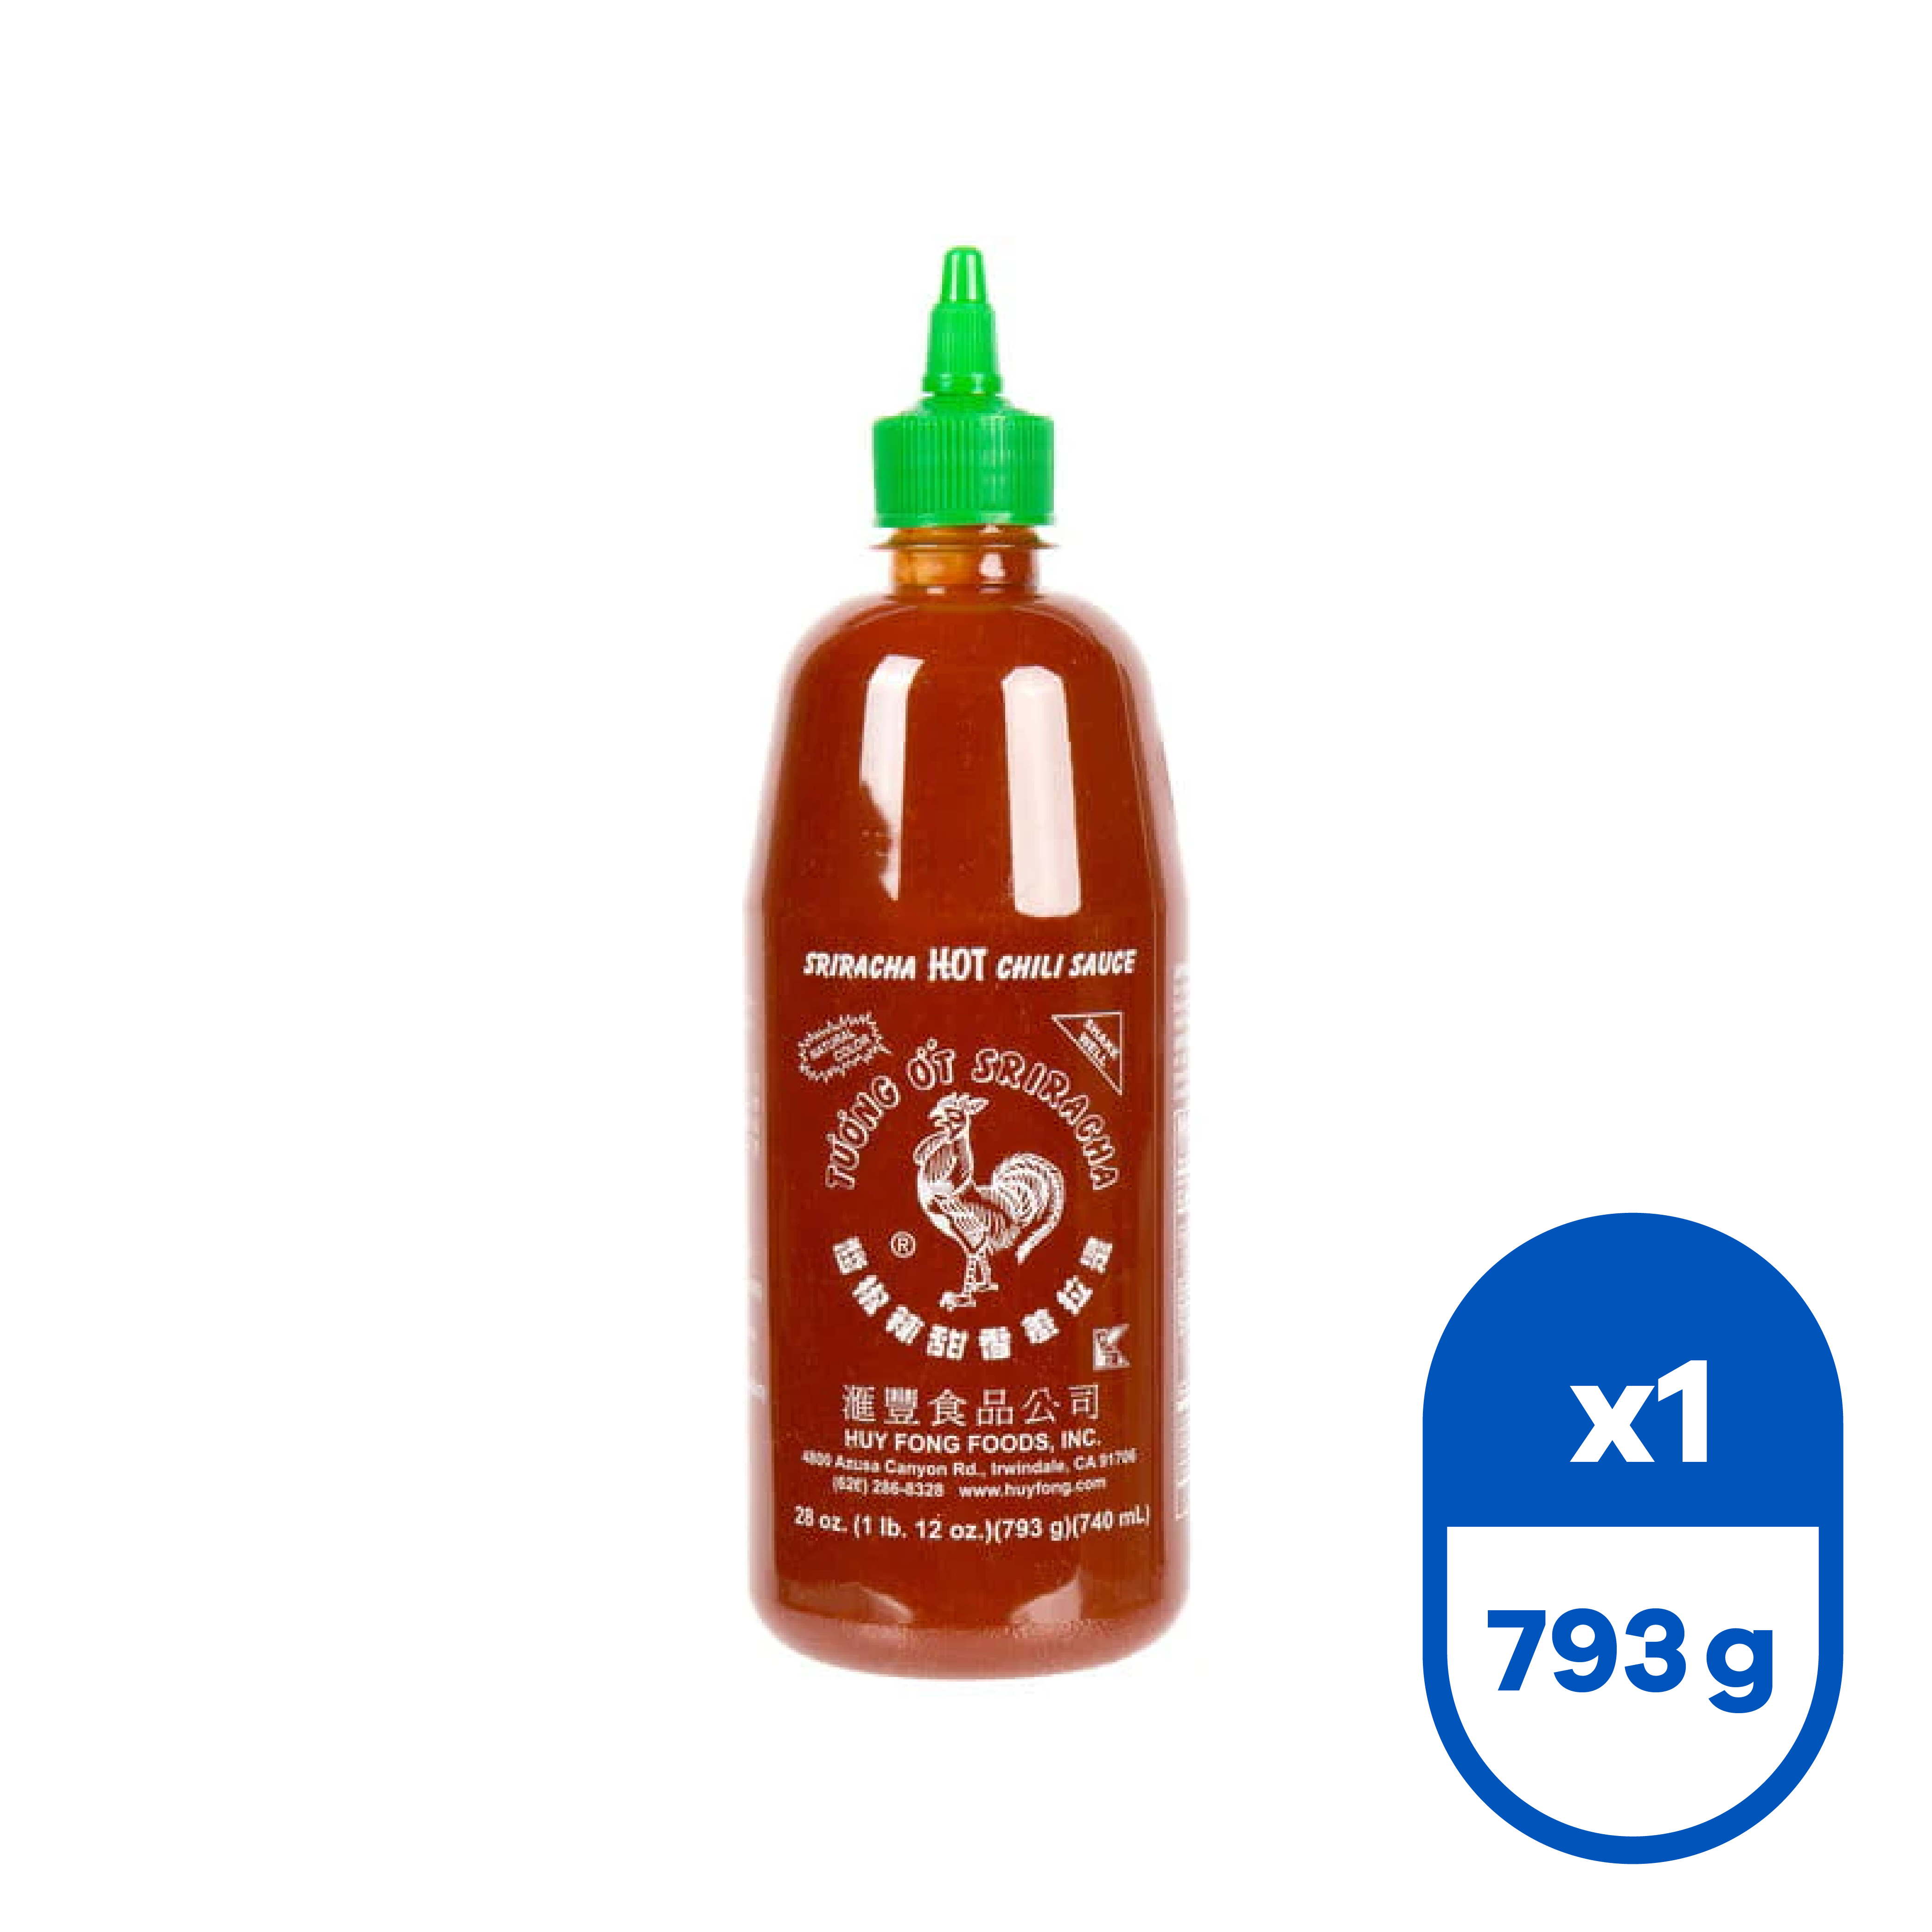 Sriracha 793 g